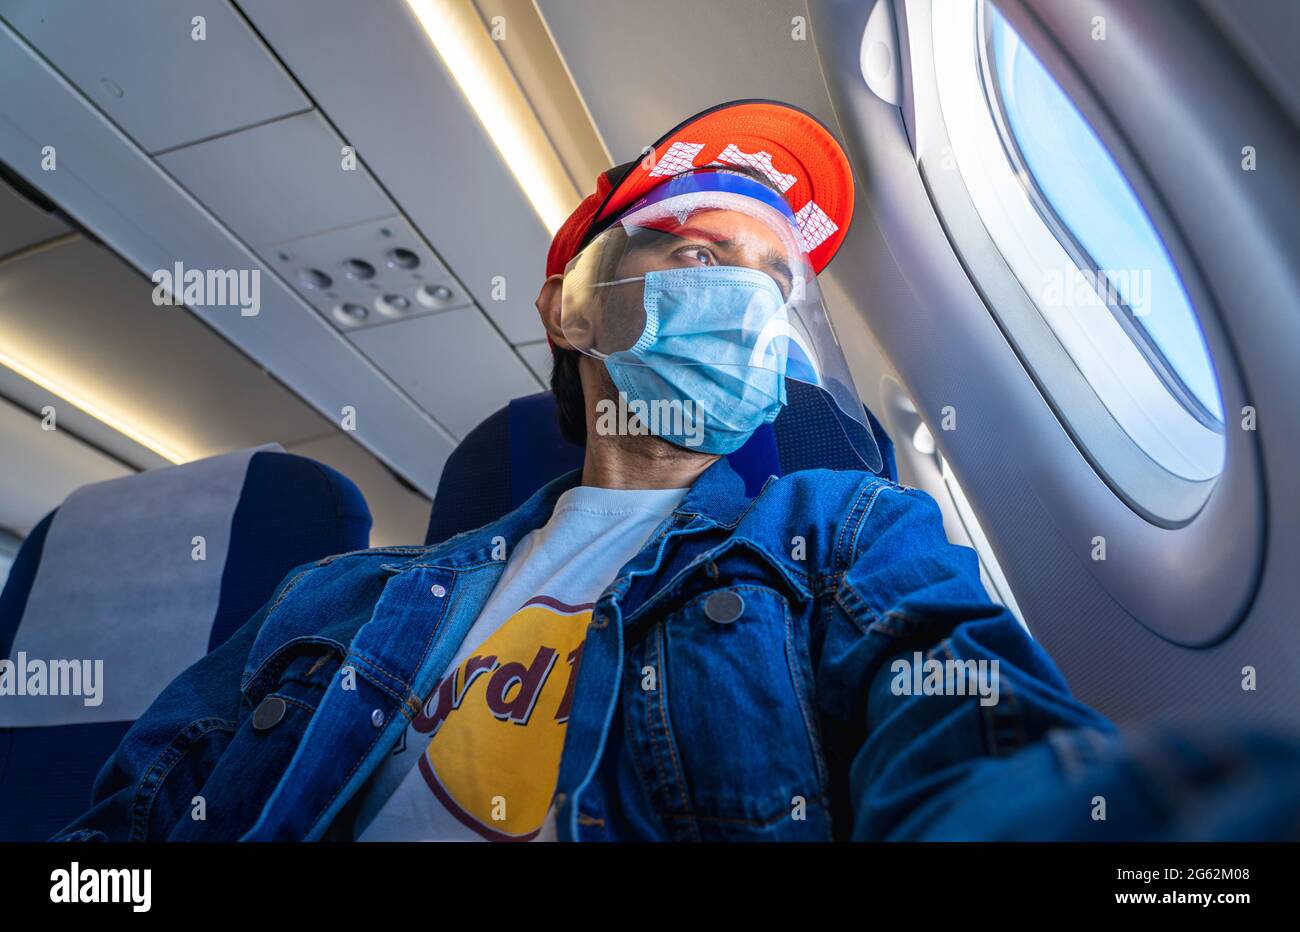 Un viajero adulto joven que lleva una máscara, un protector facial y un sombrero rojo mira fuera de la ventana del avión. Foto de stock